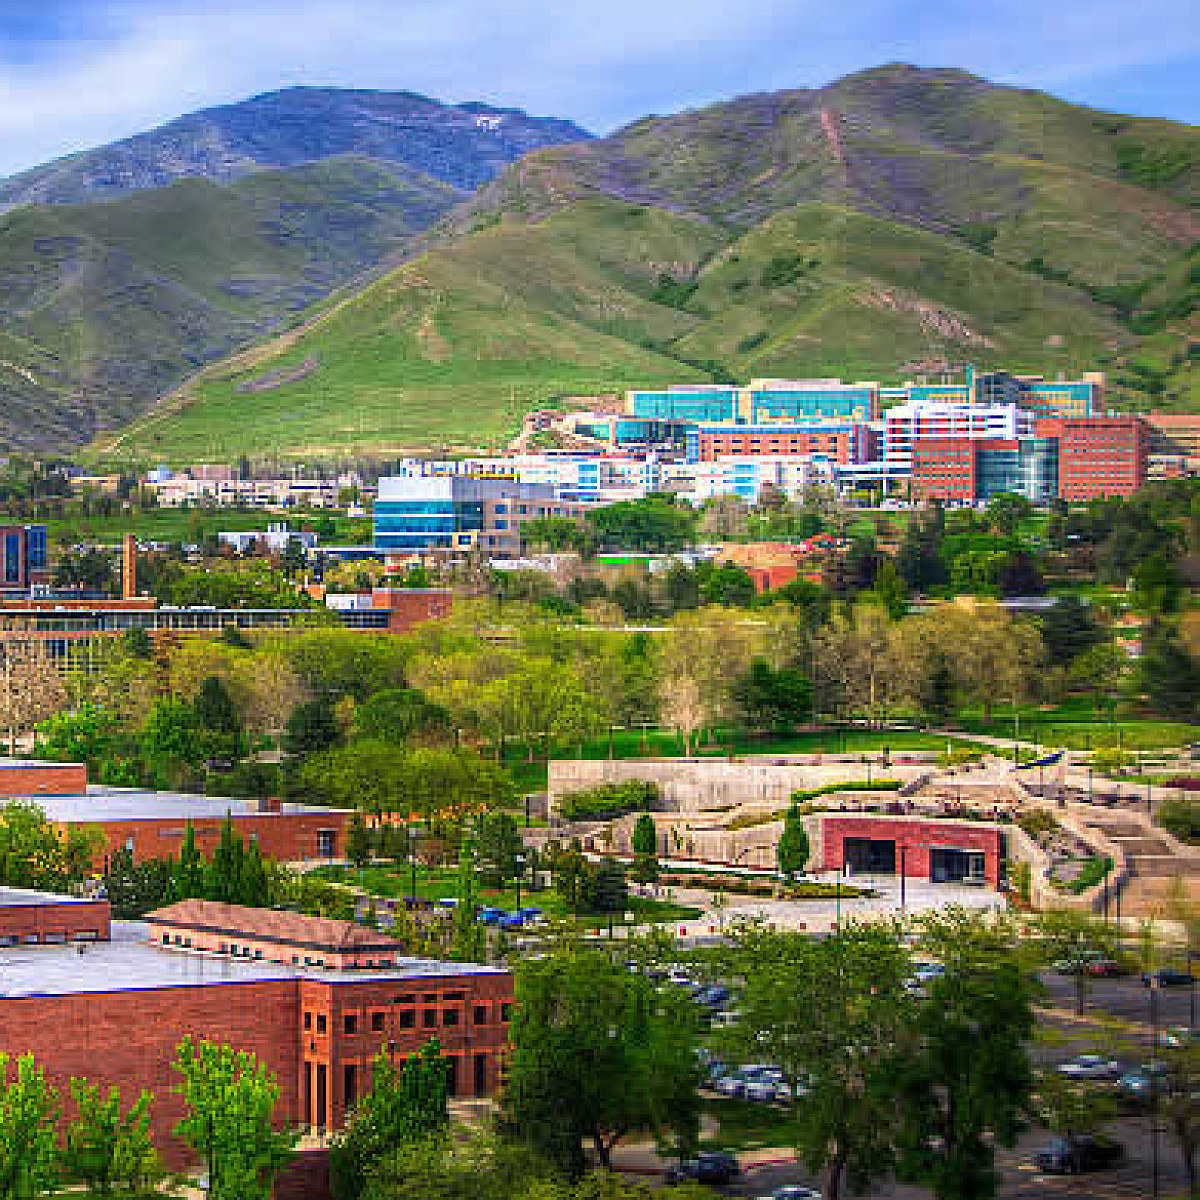 University of Utah Campus